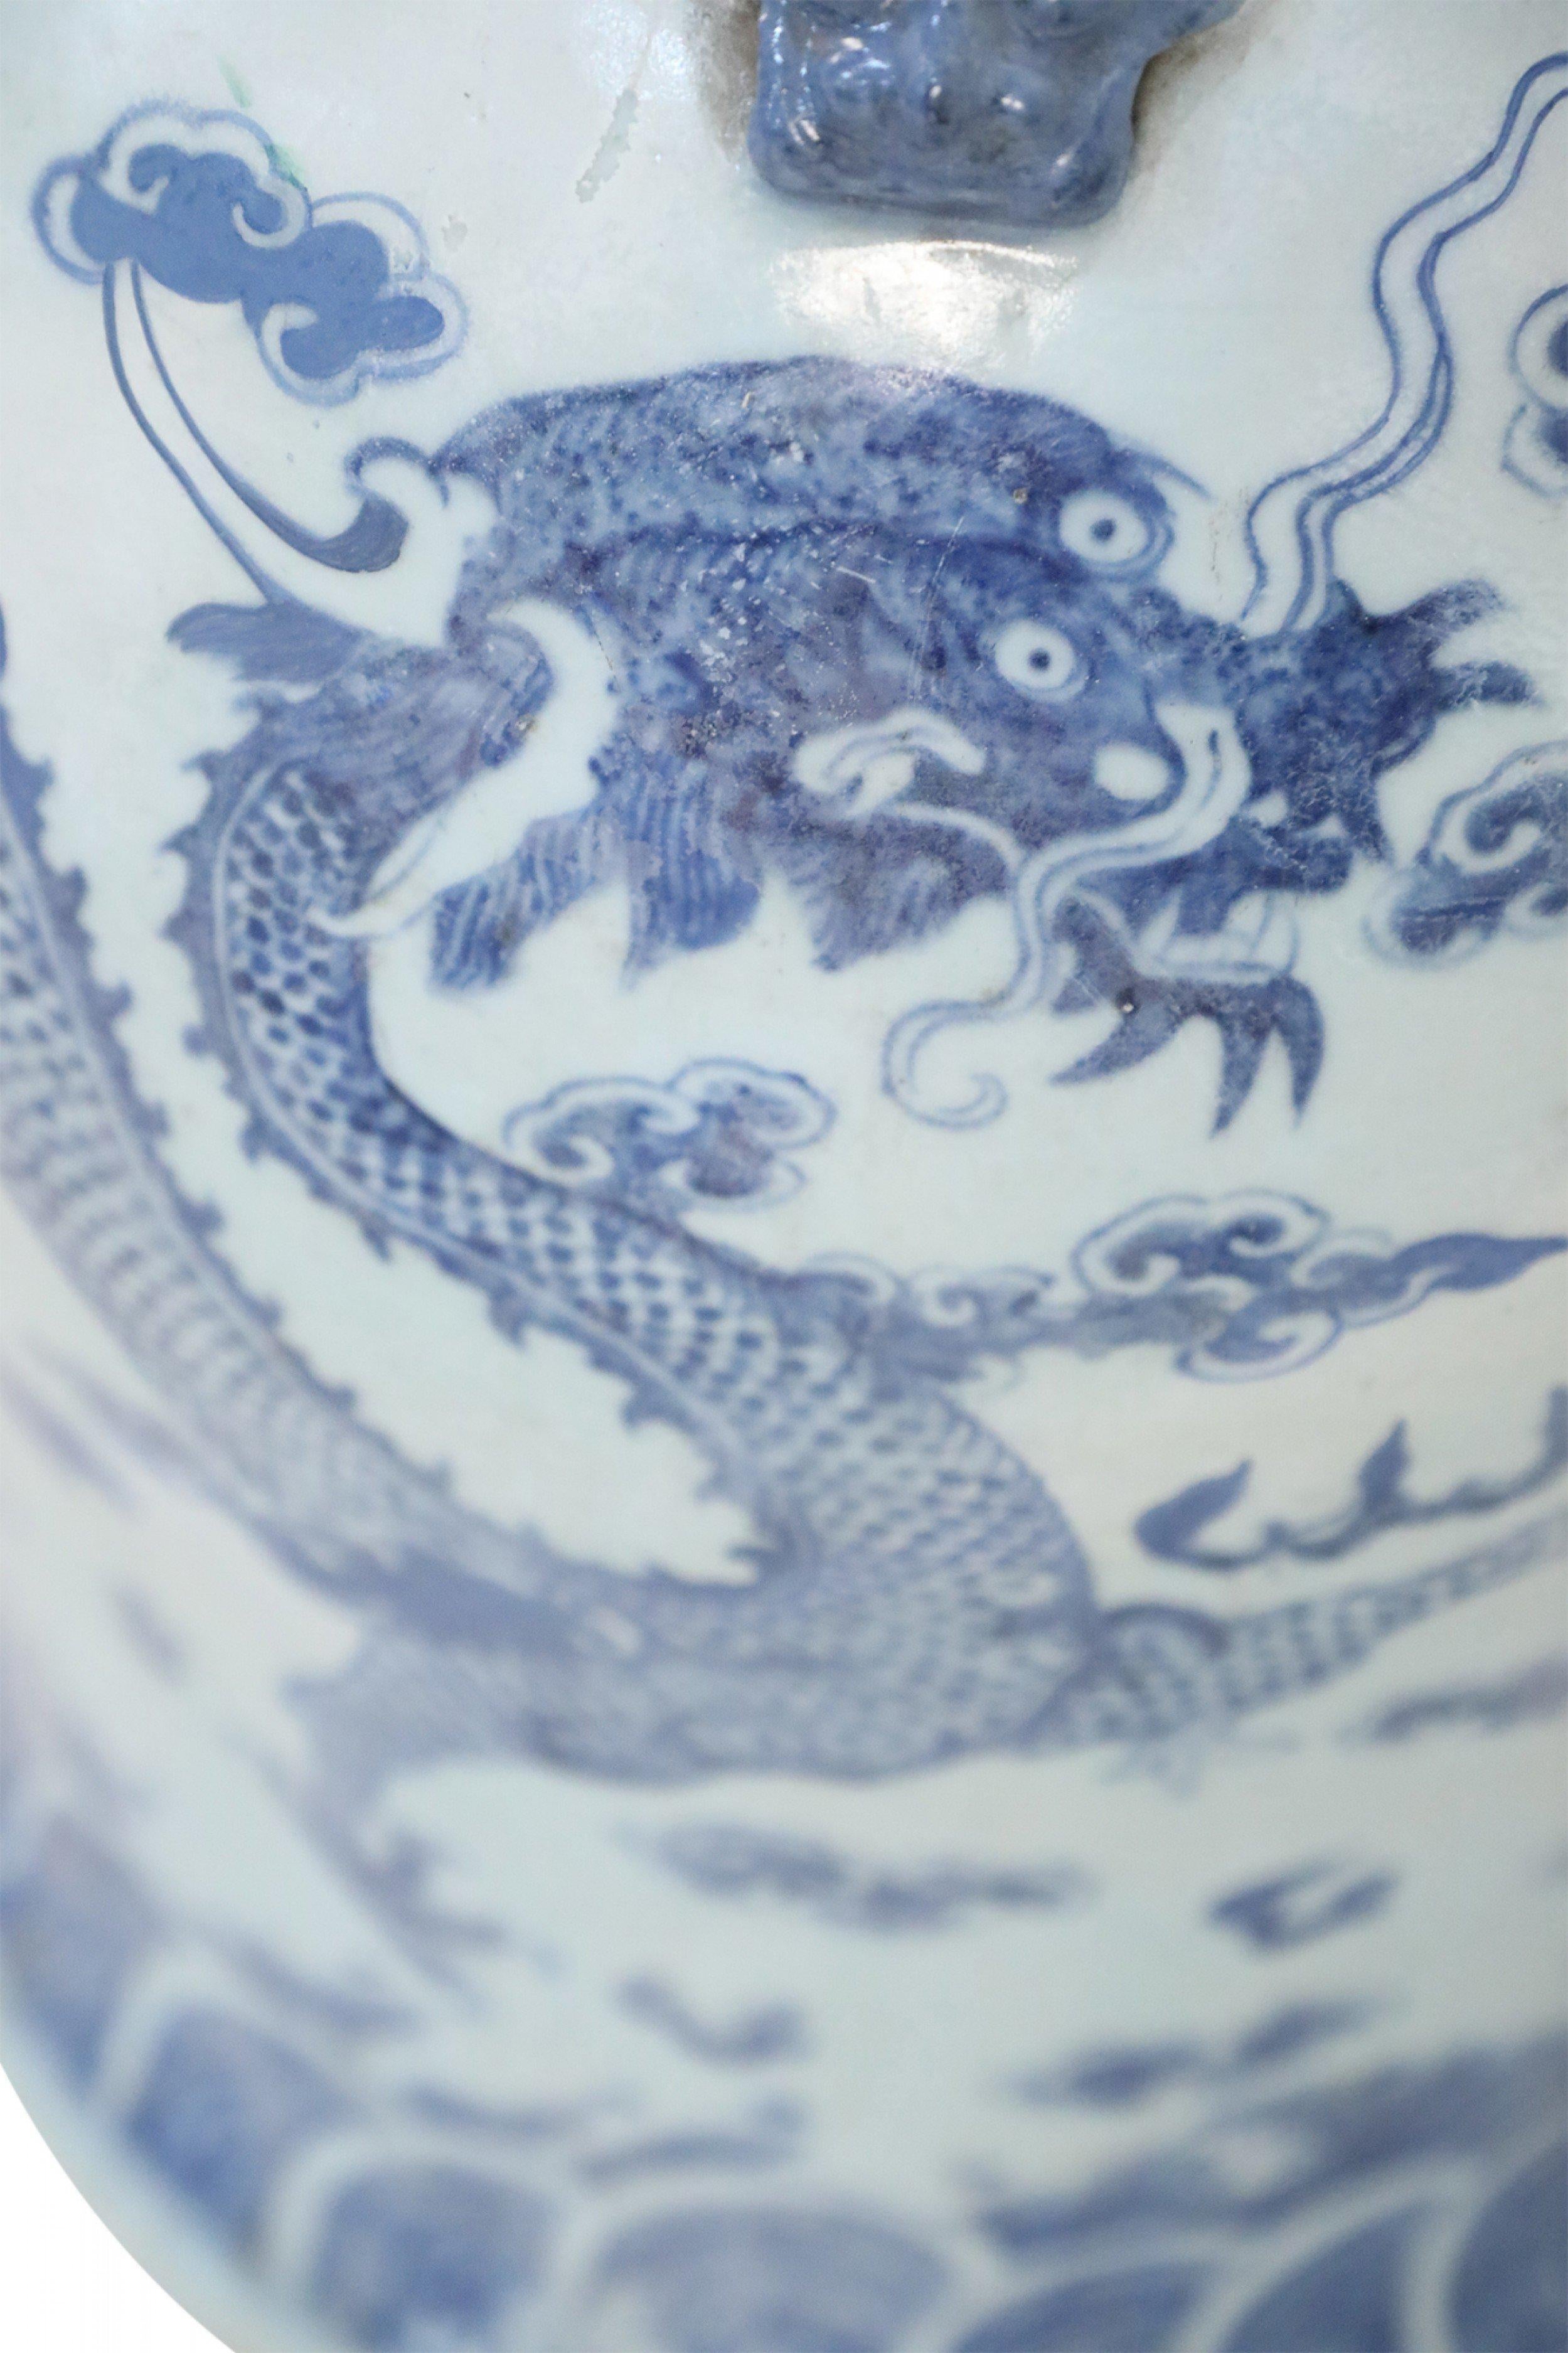 Grande urne chinoise en porcelaine blanche décorée d'un dragon bleu et de motifs de nuages et accentuée par des ornements de dragon autour de l'ouverture.
      